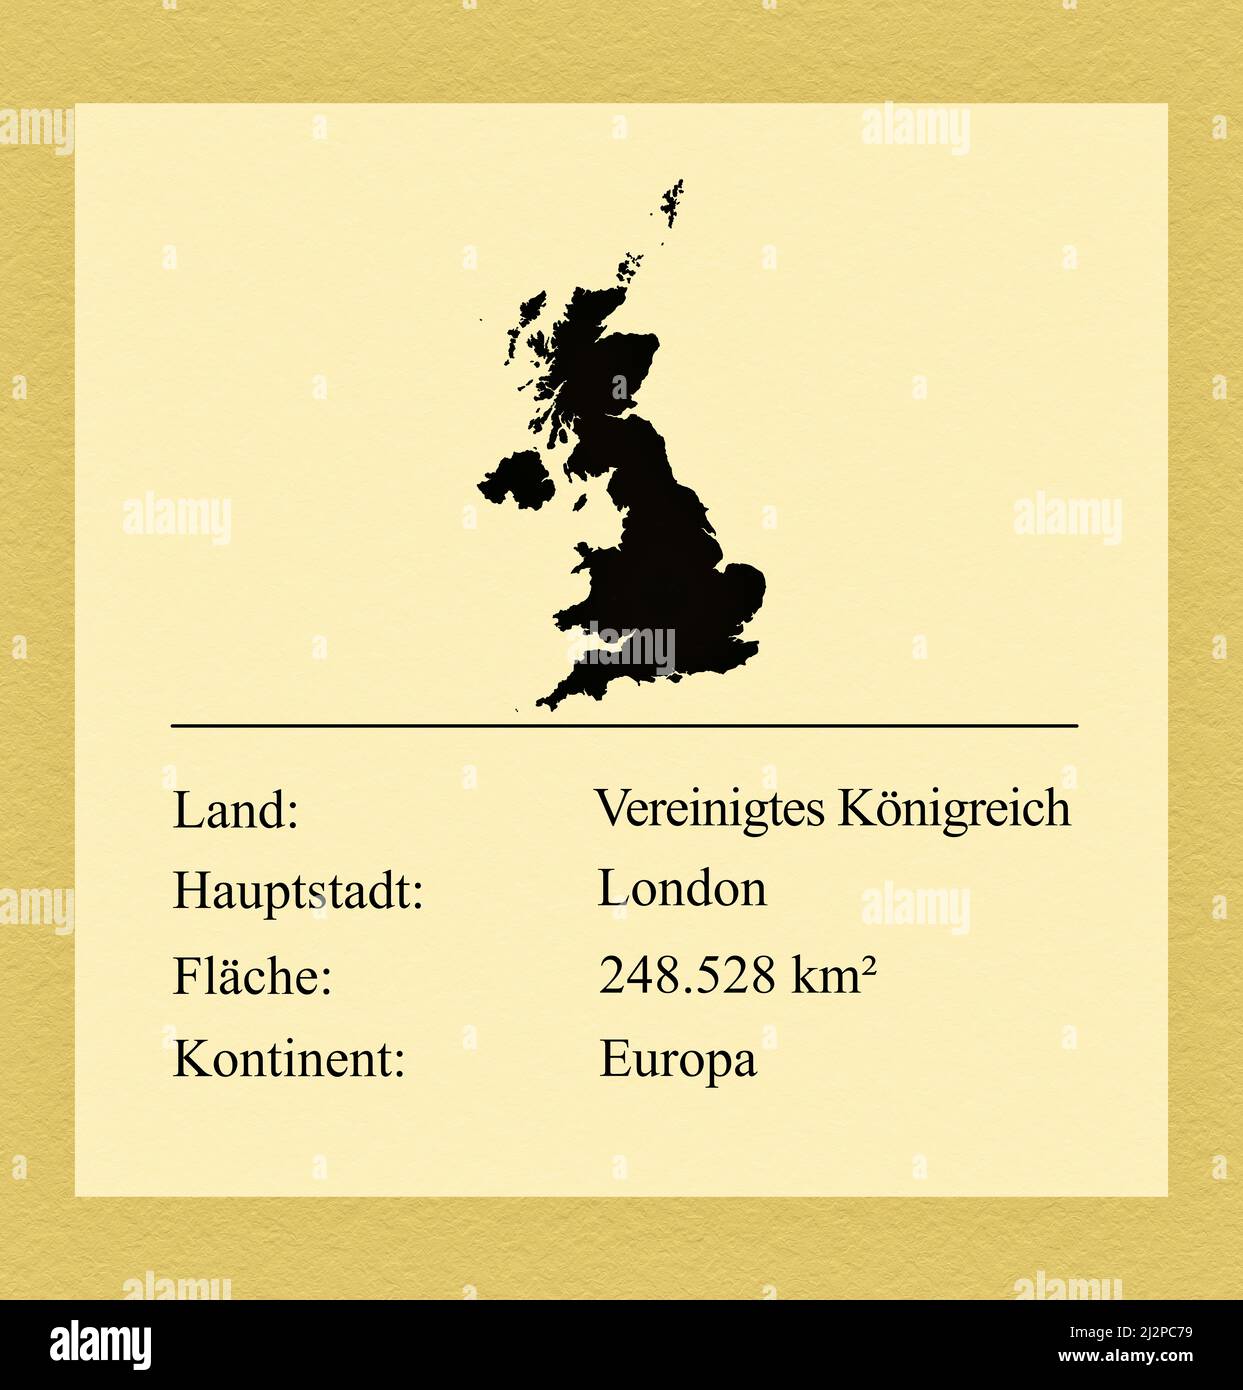 Umrisse des Vereinigten Königreiches, darunter ein kleiner Steckbrief mit Ländernamen, Hauptstadt, Fläche und Kontinent Foto de stock